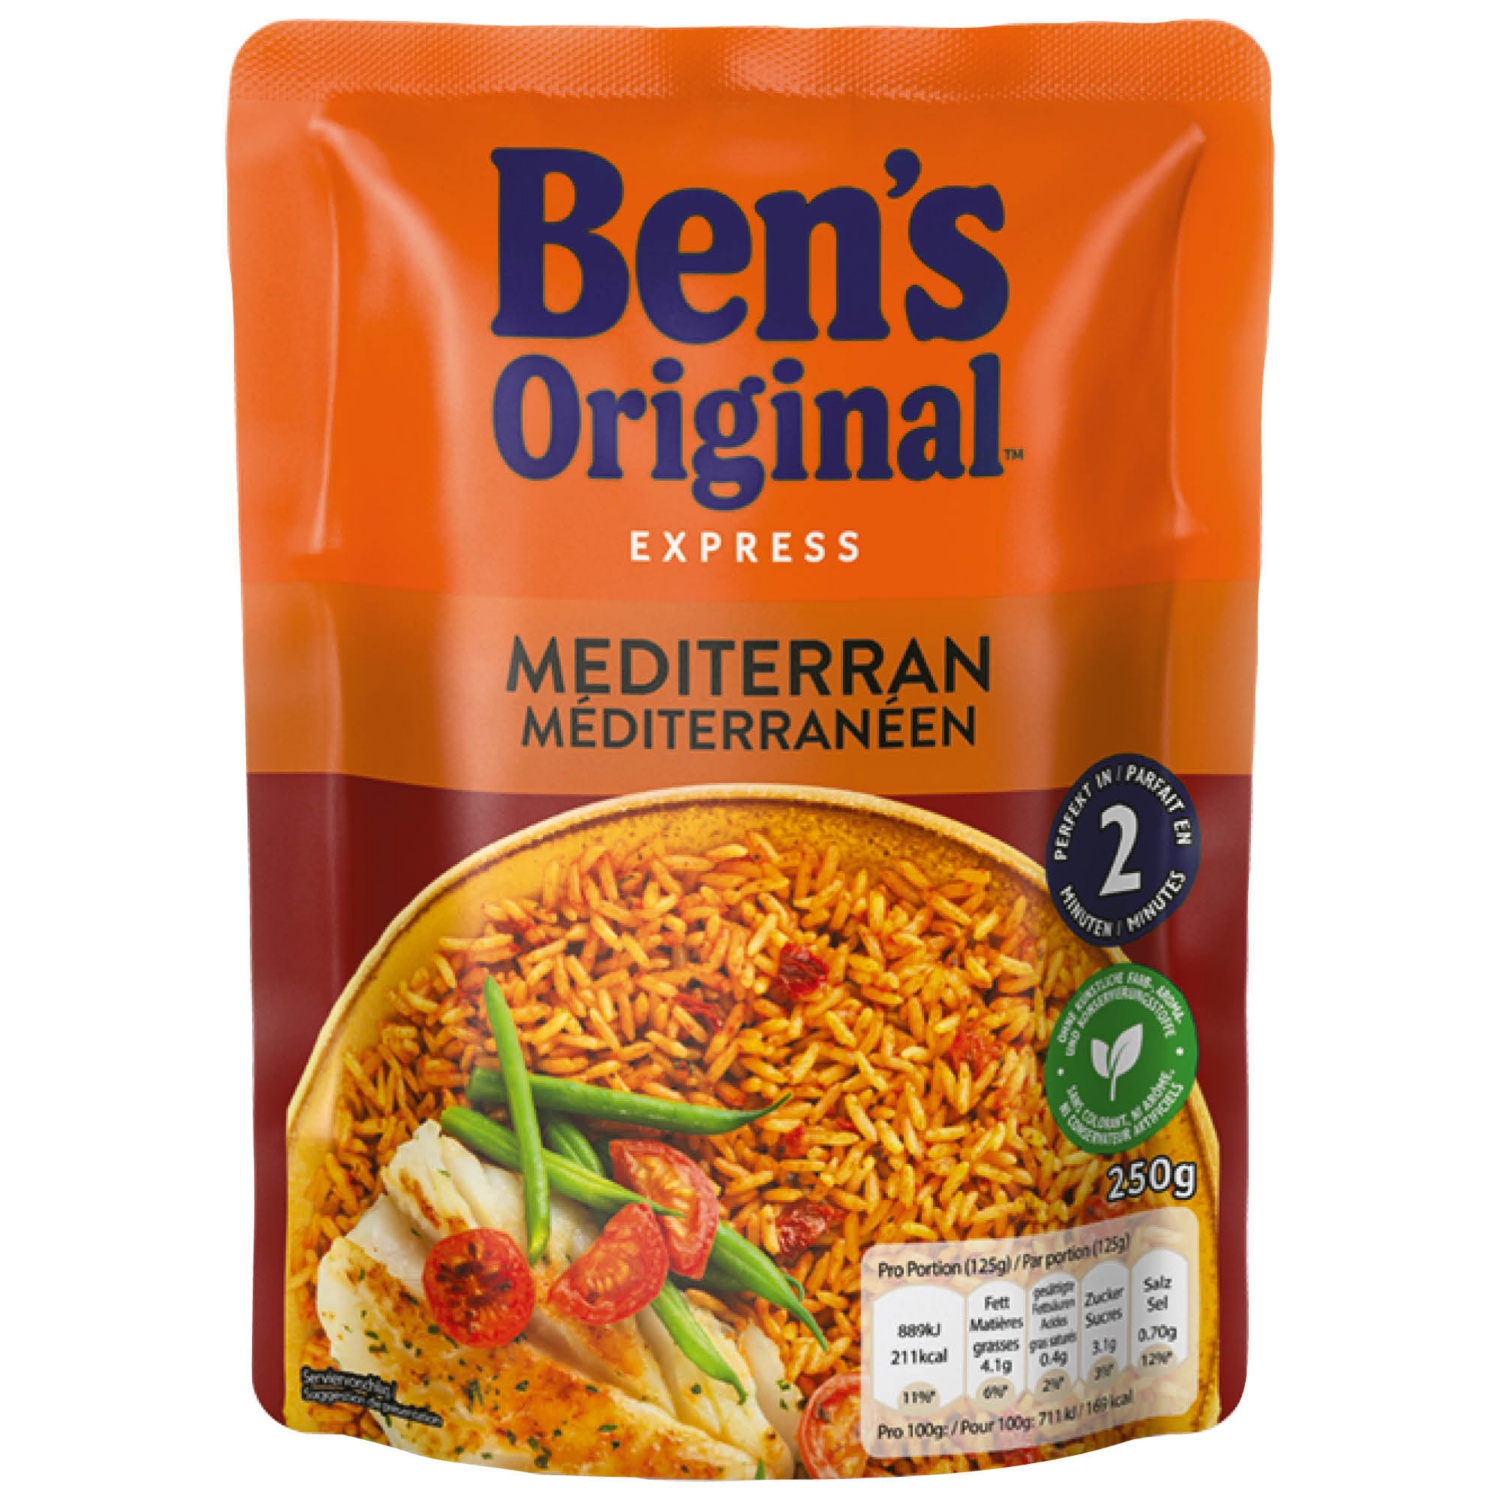 BEN'S ORIGINAL Bens express rice, Méditerranée